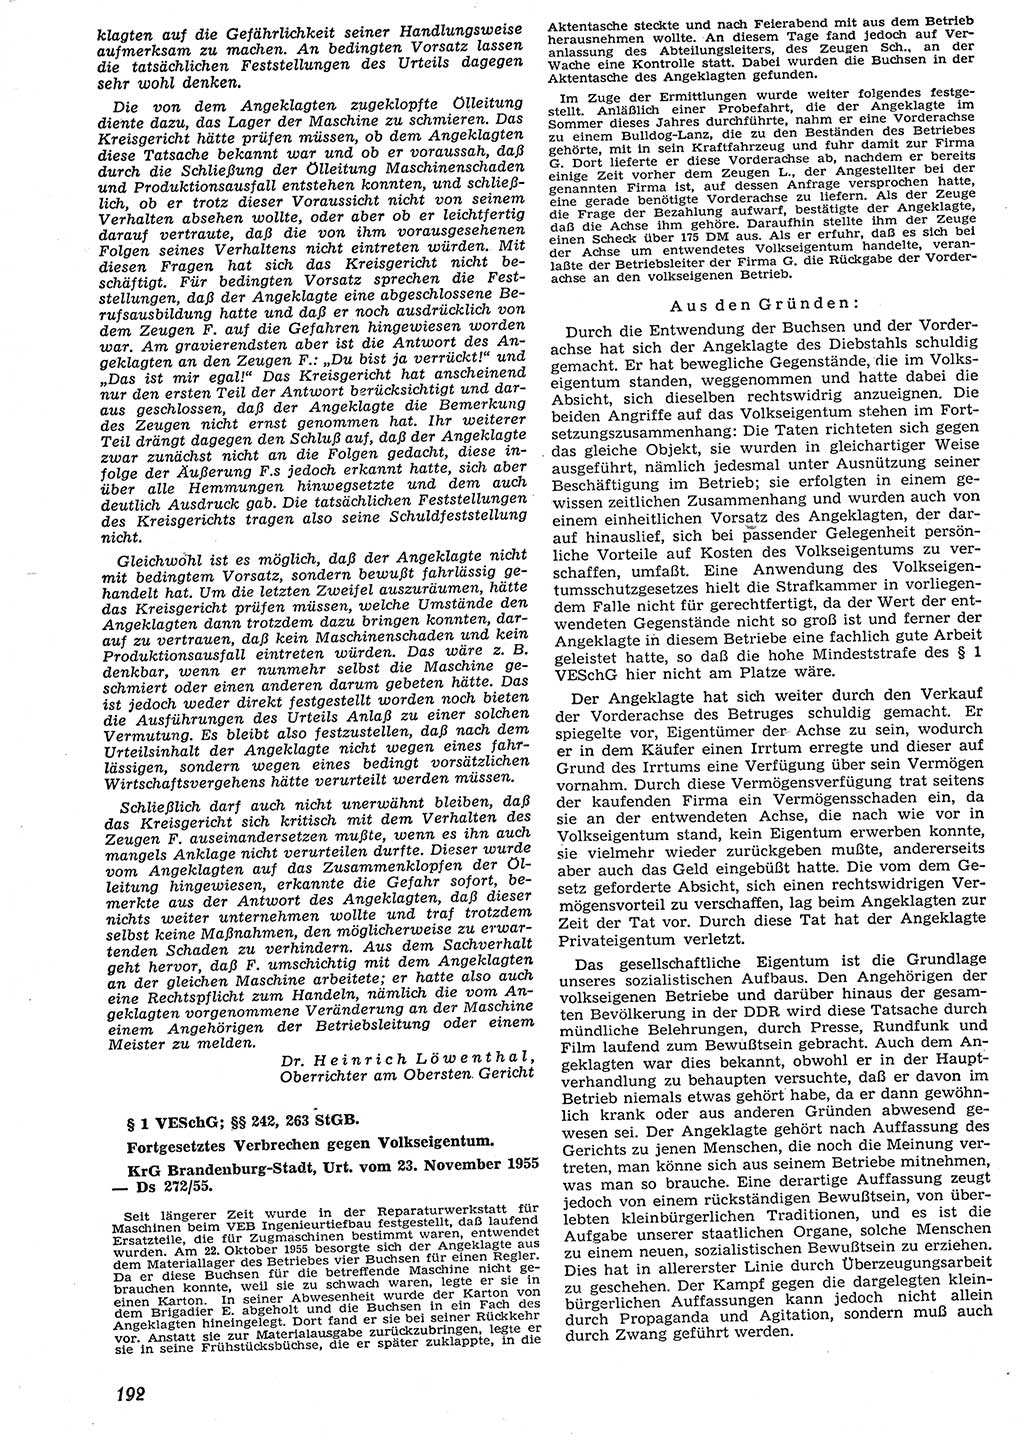 Neue Justiz (NJ), Zeitschrift für Recht und Rechtswissenschaft [Deutsche Demokratische Republik (DDR)], 10. Jahrgang 1956, Seite 192 (NJ DDR 1956, S. 192)